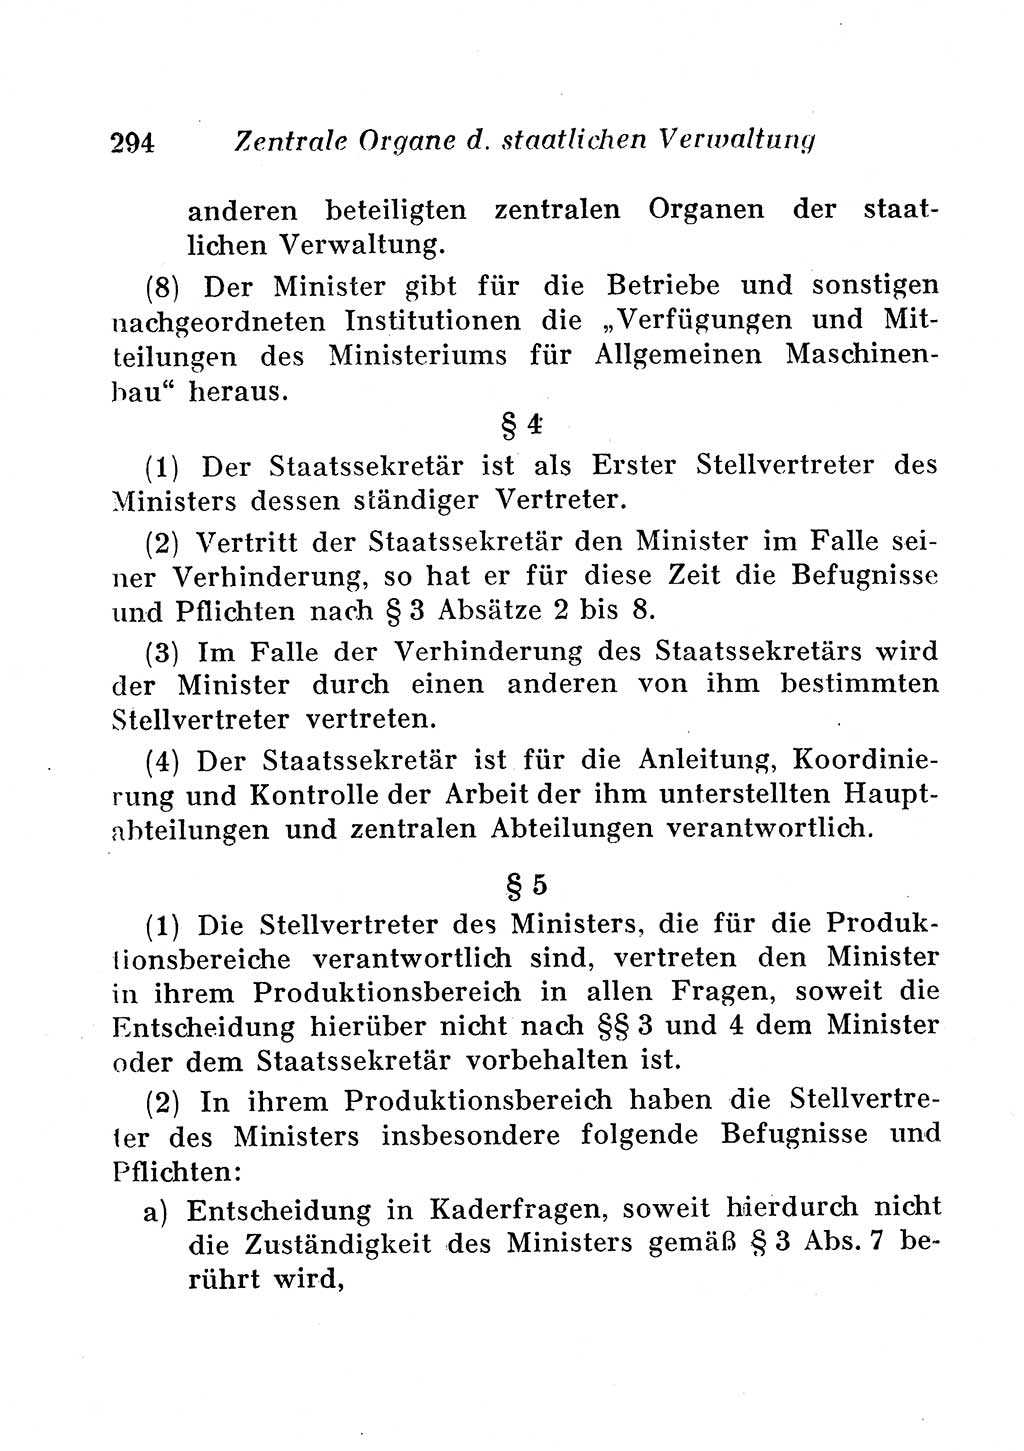 Staats- und verwaltungsrechtliche Gesetze der Deutschen Demokratischen Republik (DDR) 1958, Seite 294 (StVerwR Ges. DDR 1958, S. 294)